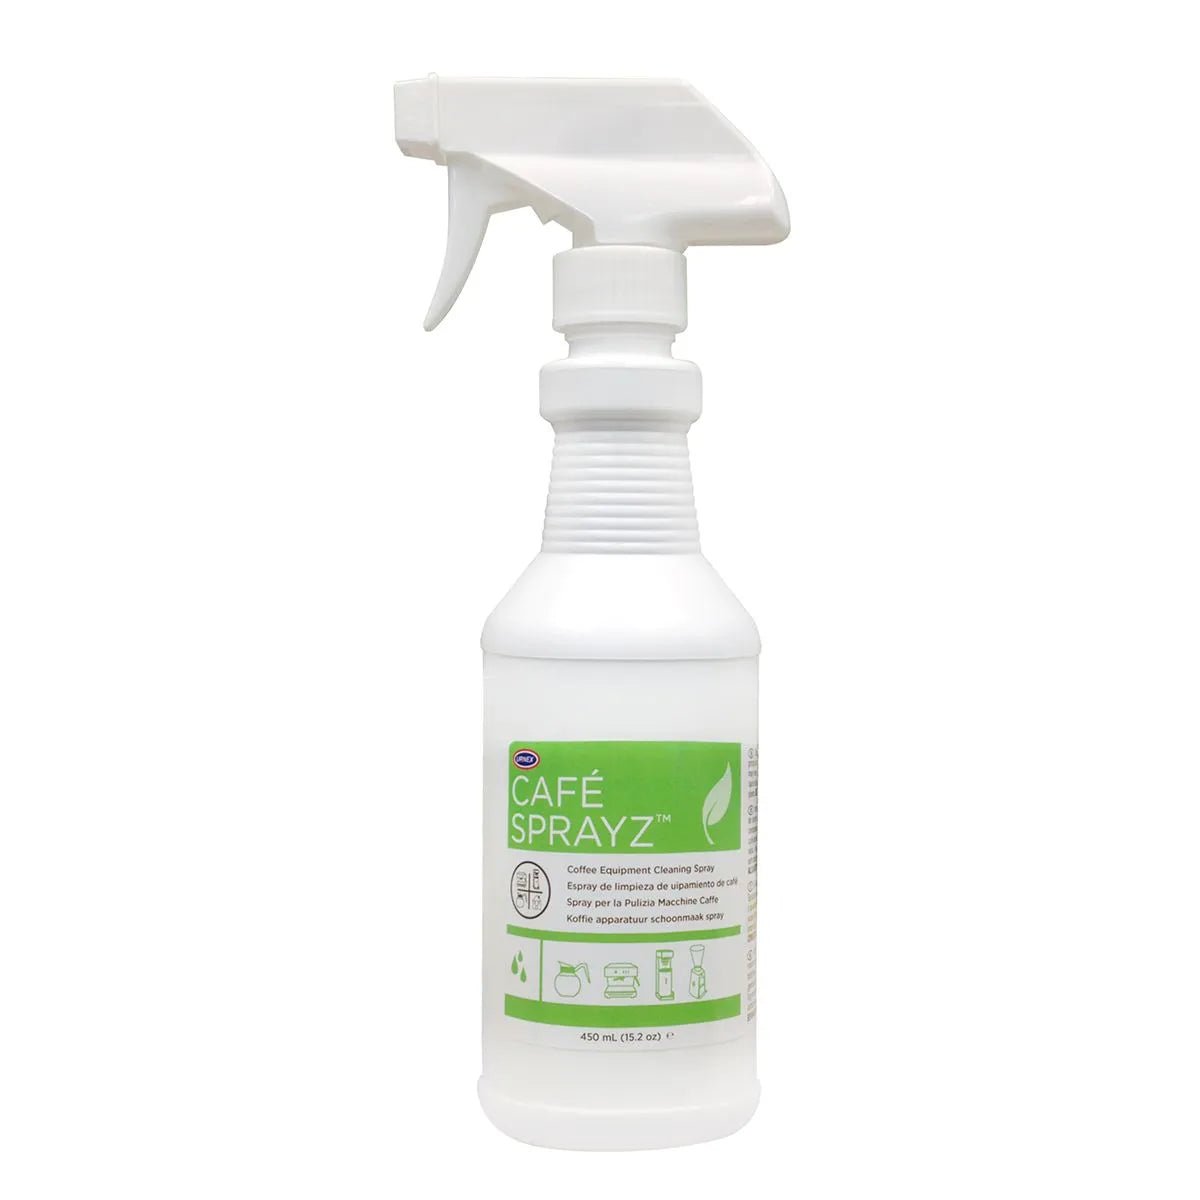 Urnex Sprayz Coffee Equipment Cleaner (450ml)